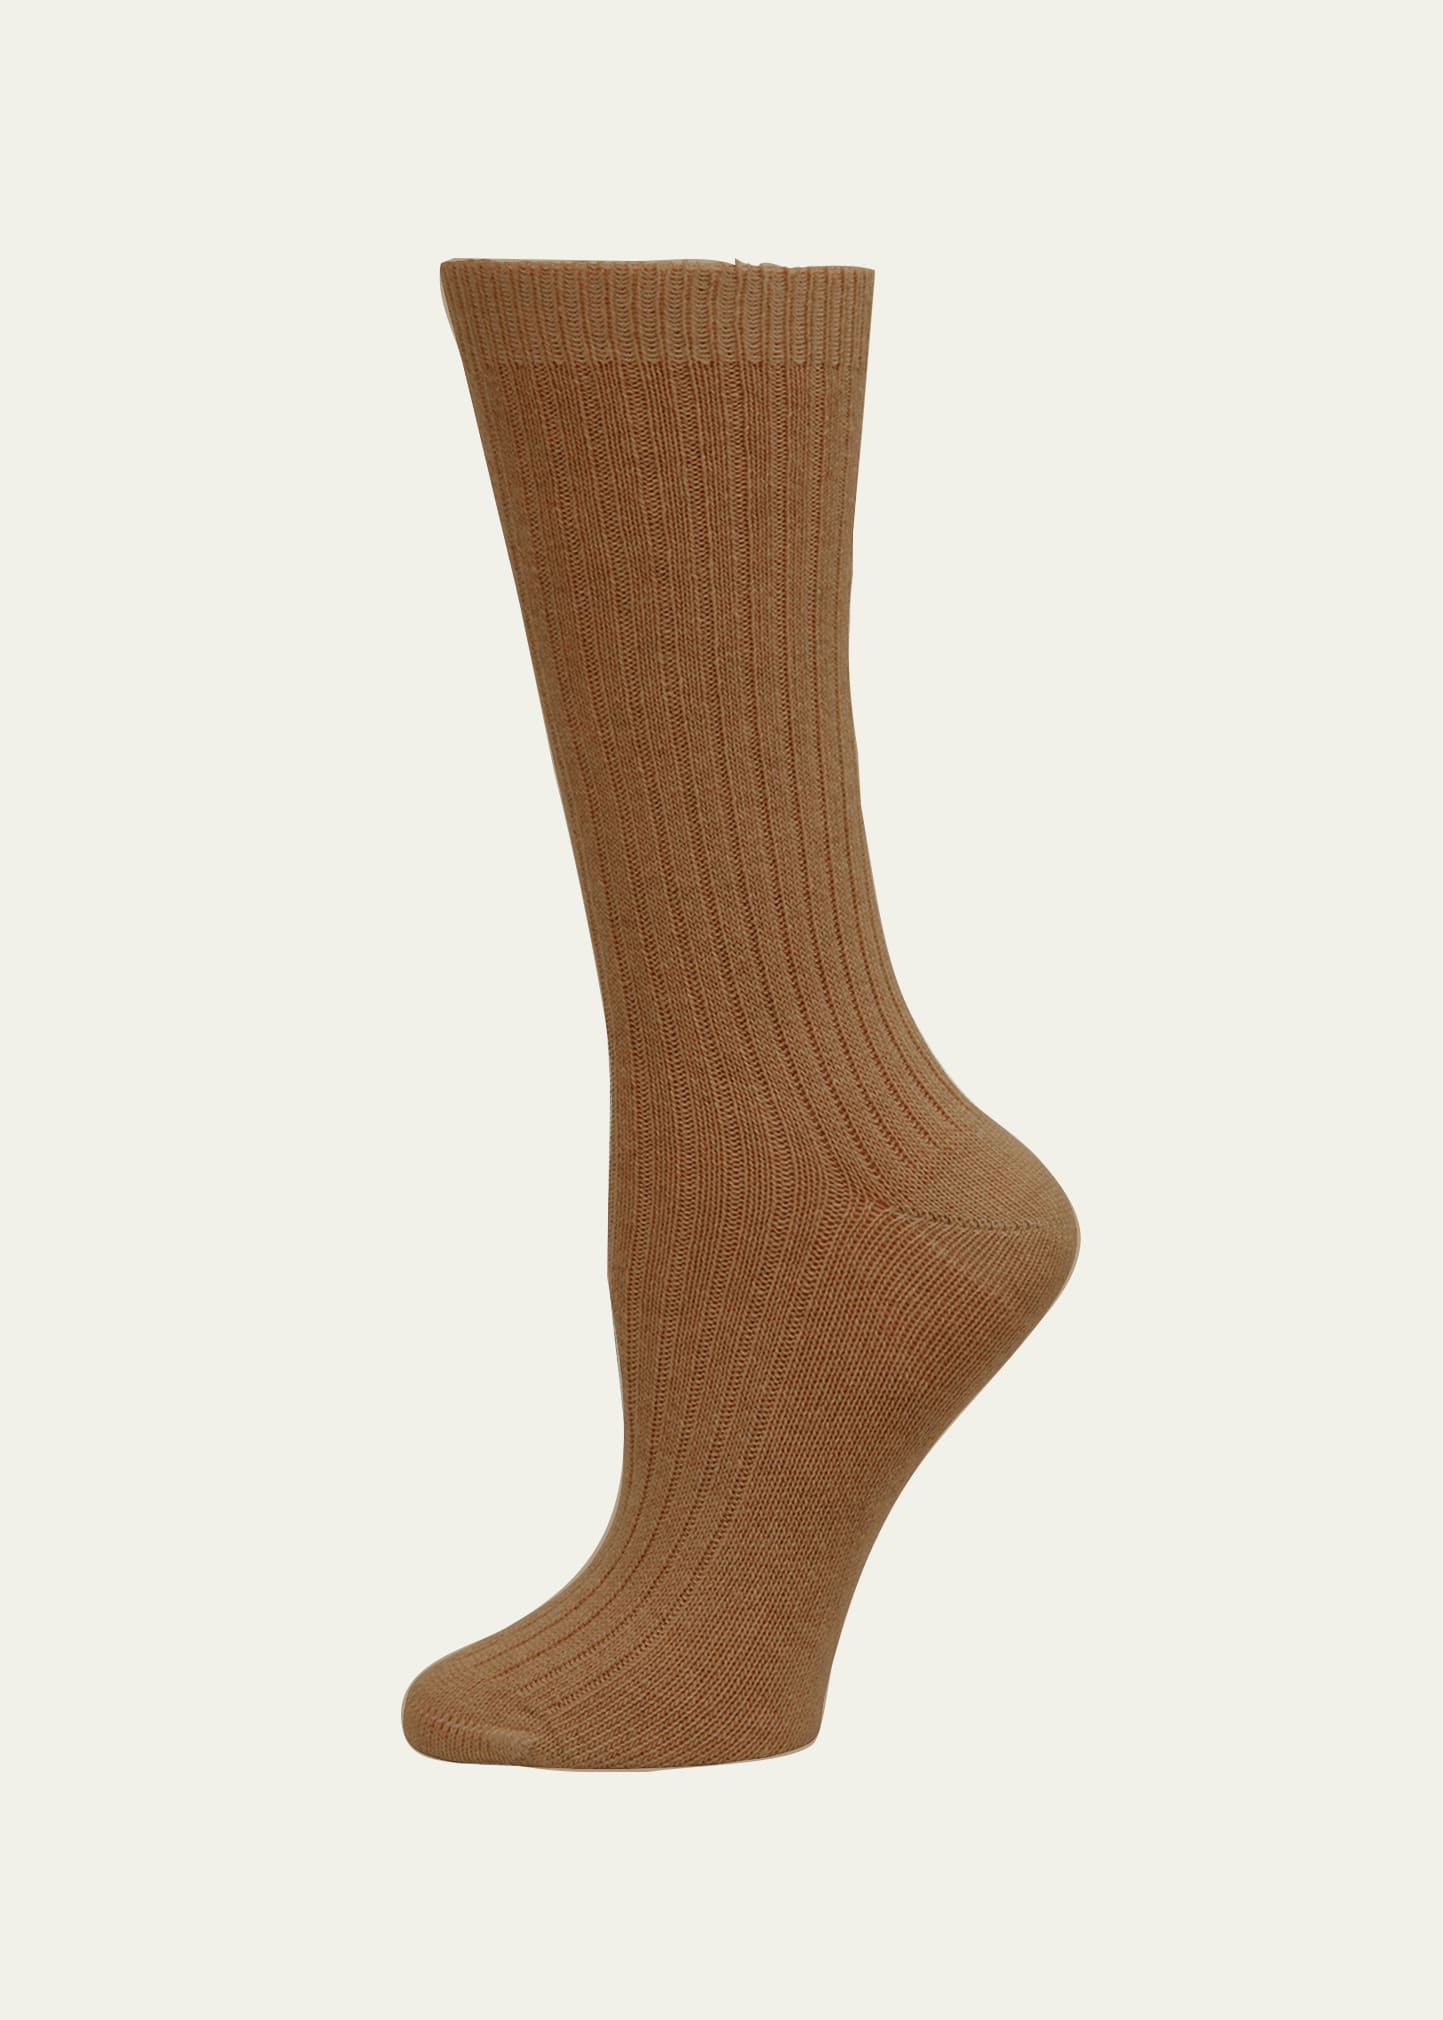 Accessories Socks